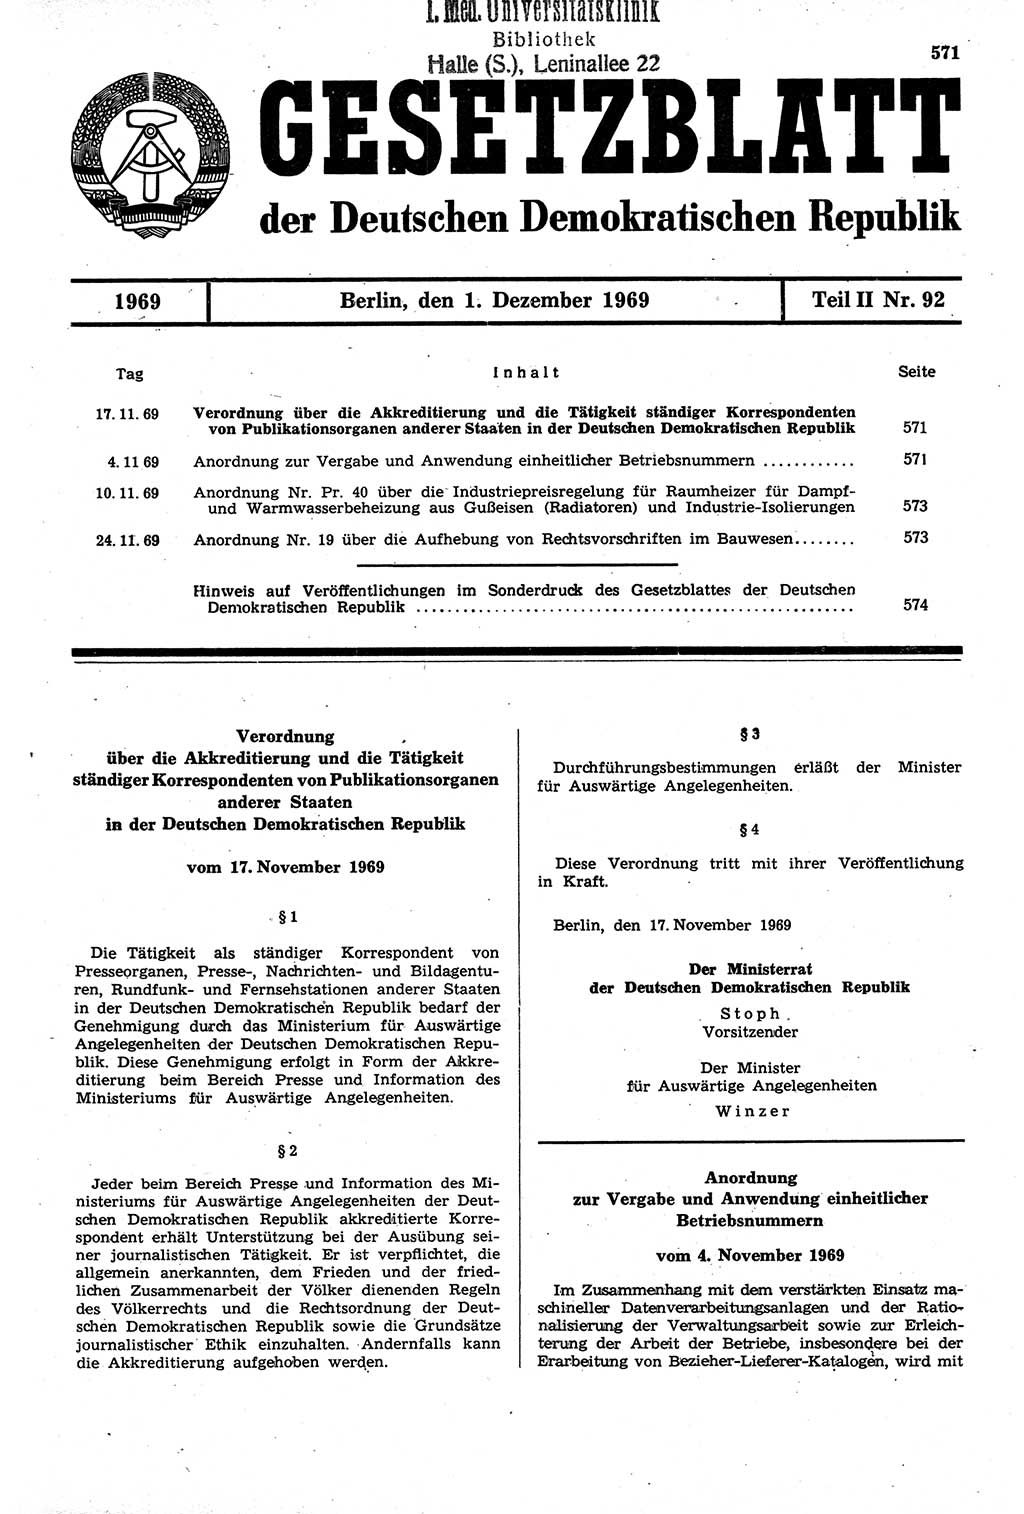 Gesetzblatt (GBl.) der Deutschen Demokratischen Republik (DDR) Teil ⅠⅠ 1969, Seite 571 (GBl. DDR ⅠⅠ 1969, S. 571)